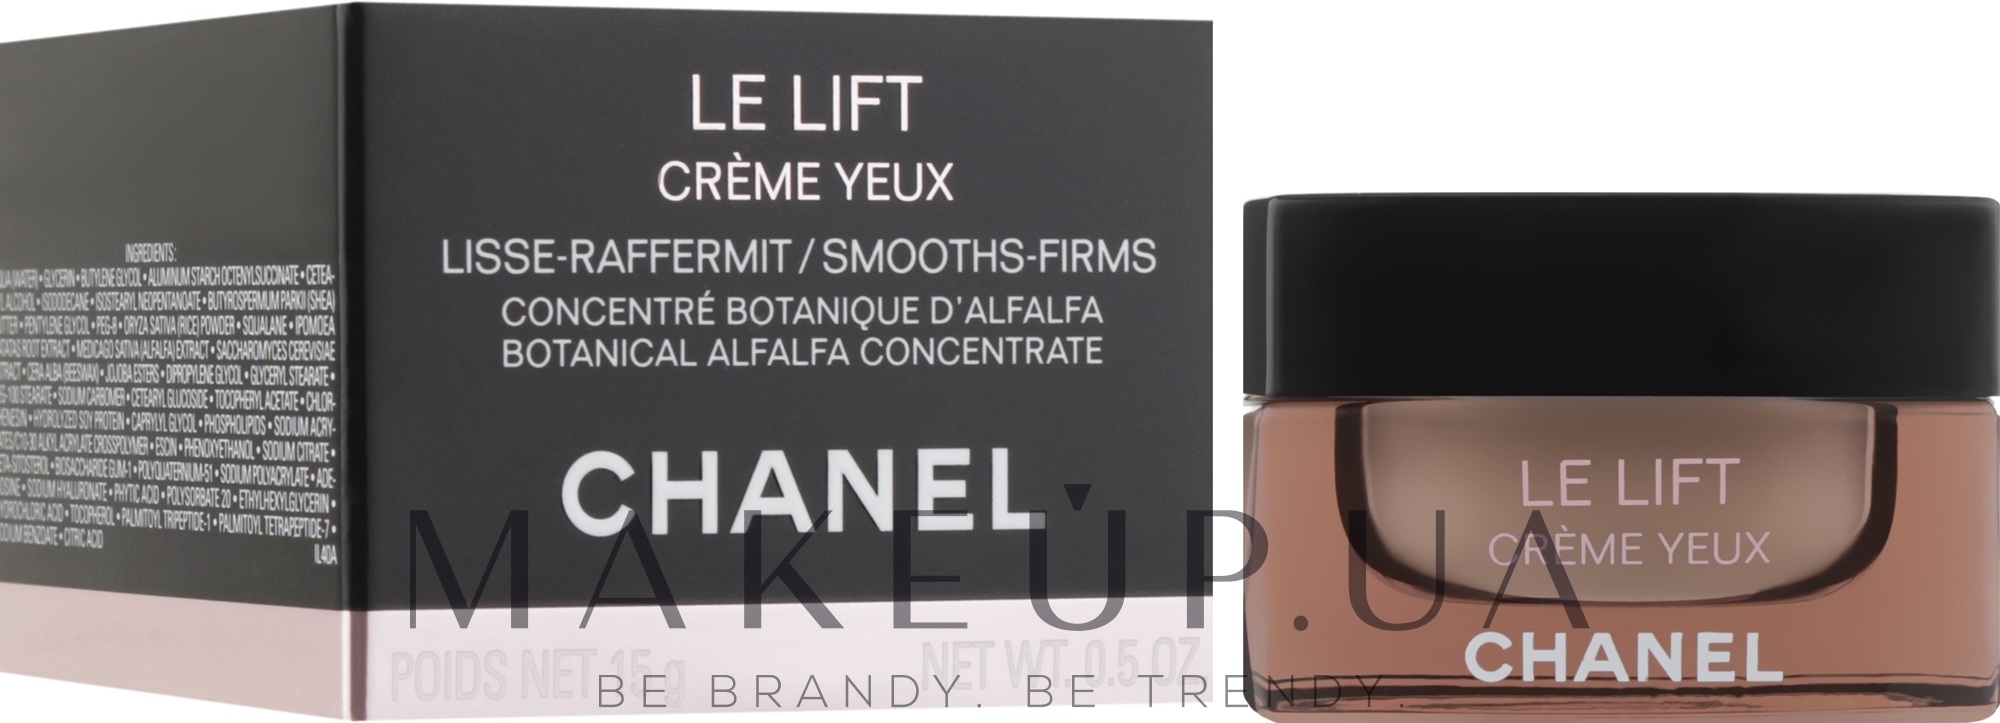 Крем для повышения упругости кожи лица Chanel Le Lift Crème Riche  насыщенная текстура  Купить Оптом в Москве  MoskvaOptomru